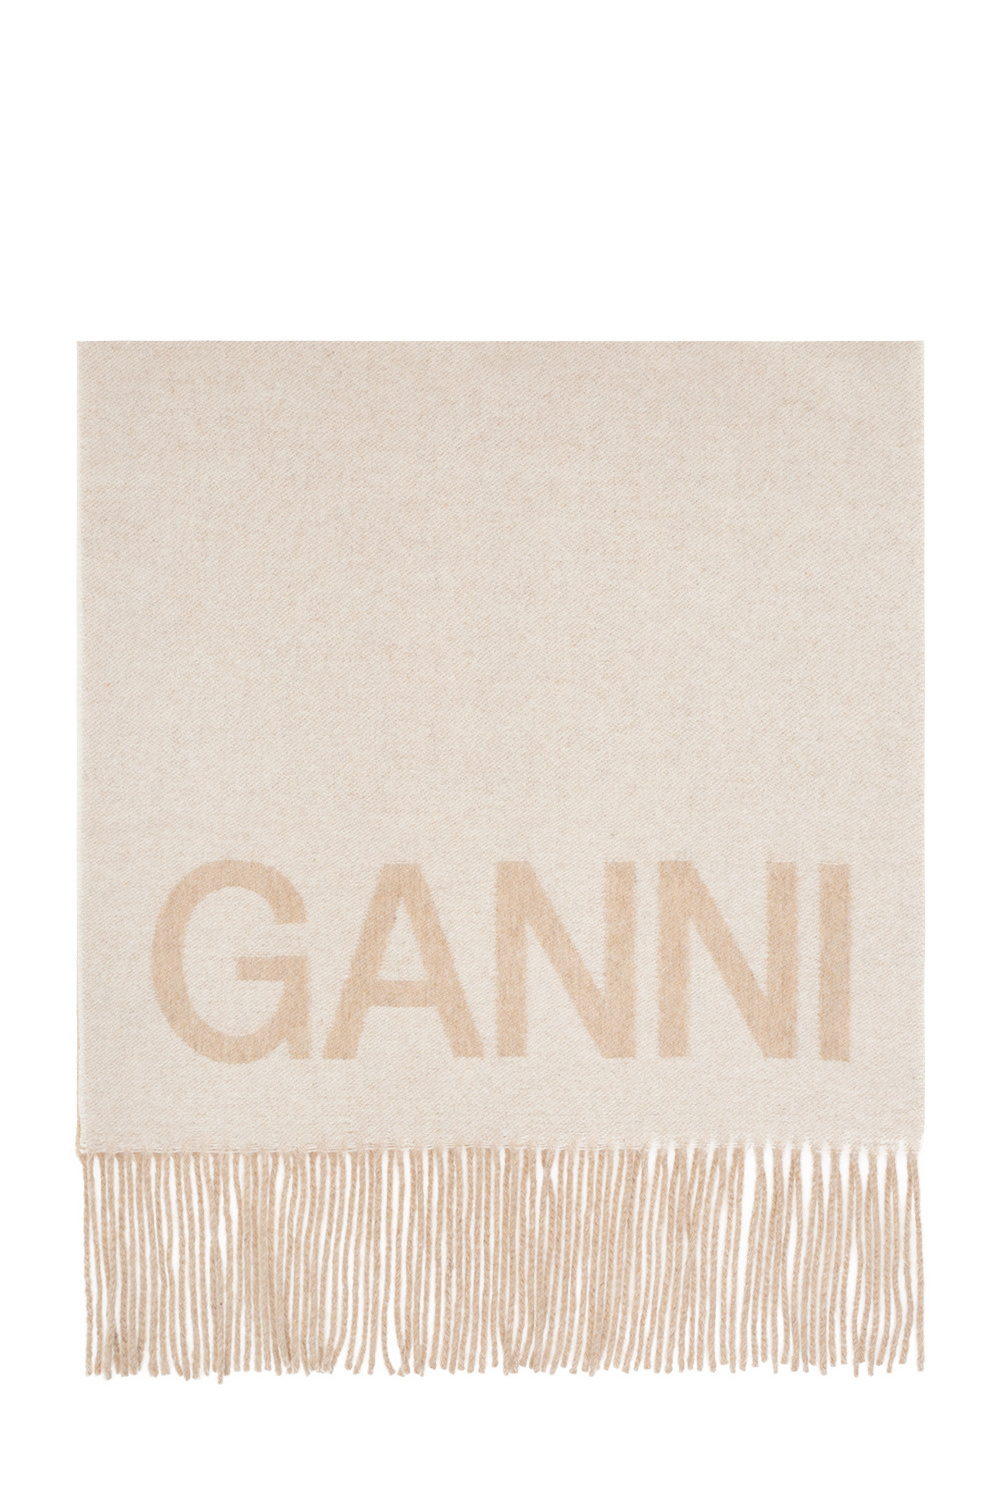 Ganni Follow Us: On Various Platforms